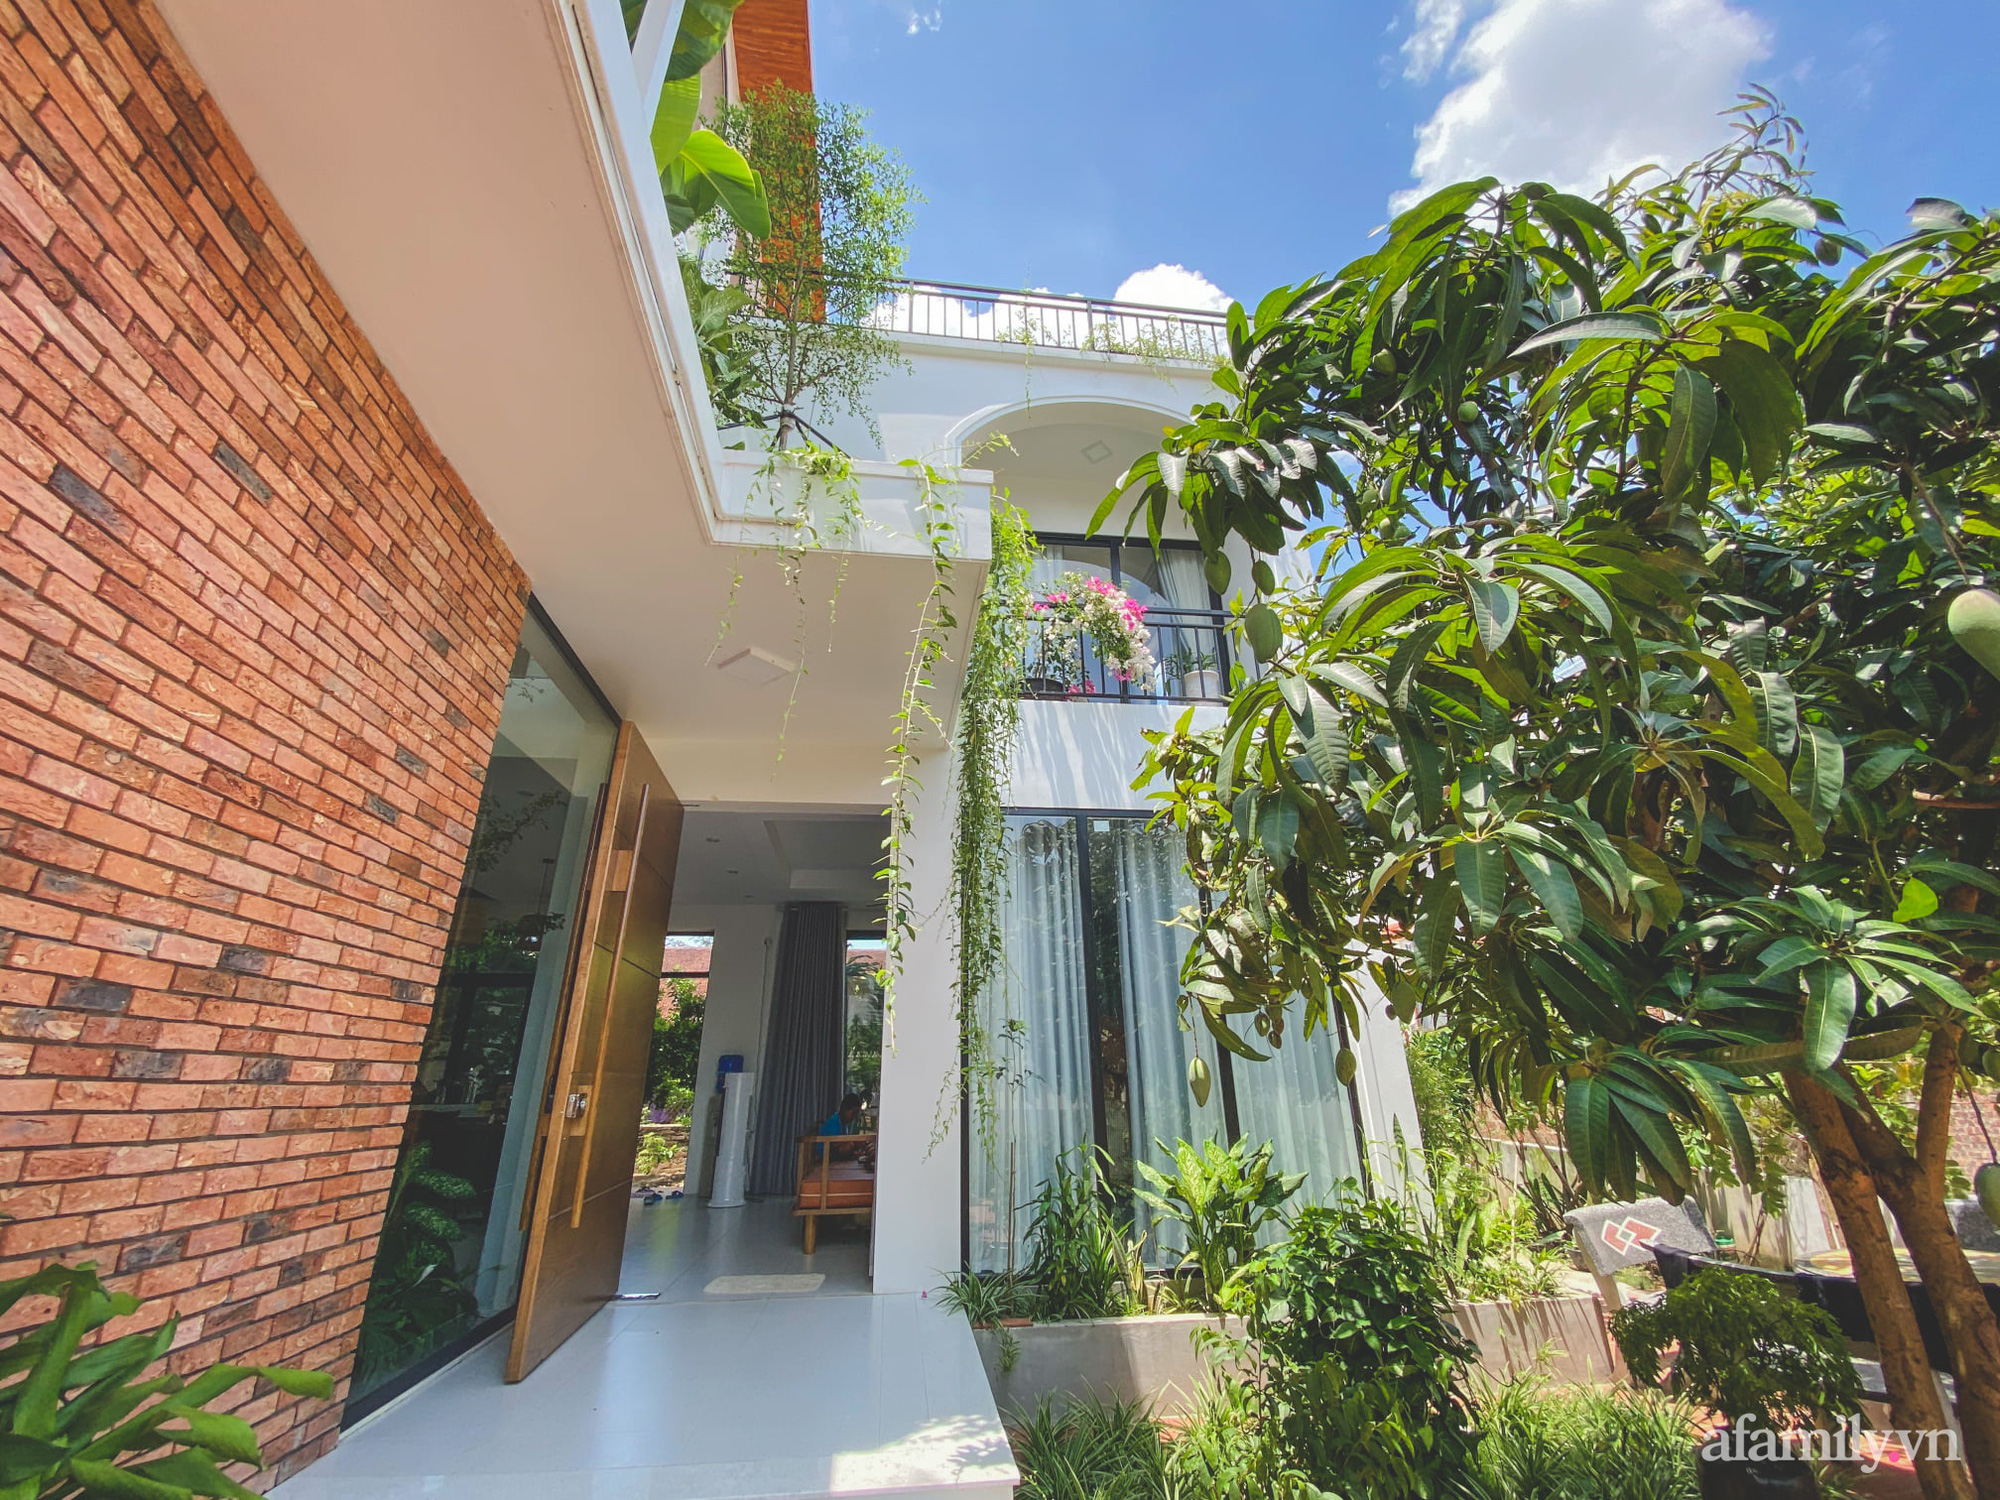 Căn nhà 90 m² đẹp bình yên, xanh mát bóng cây giữa làng cổ Đường Lâm, Hà Nội - Ảnh 6.